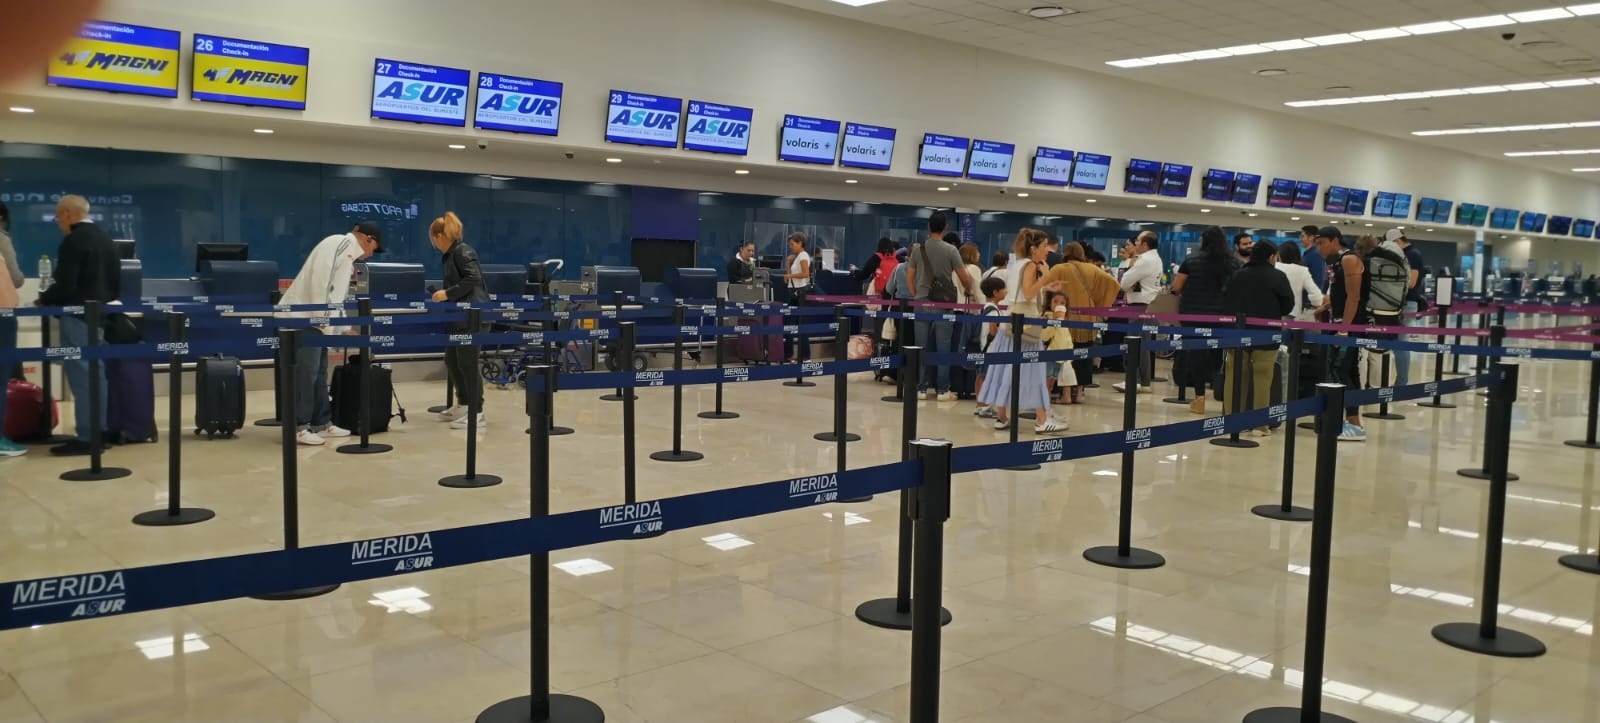 El Aeropuerto de Mérida inició la semana con sólo un vuelo retrasado